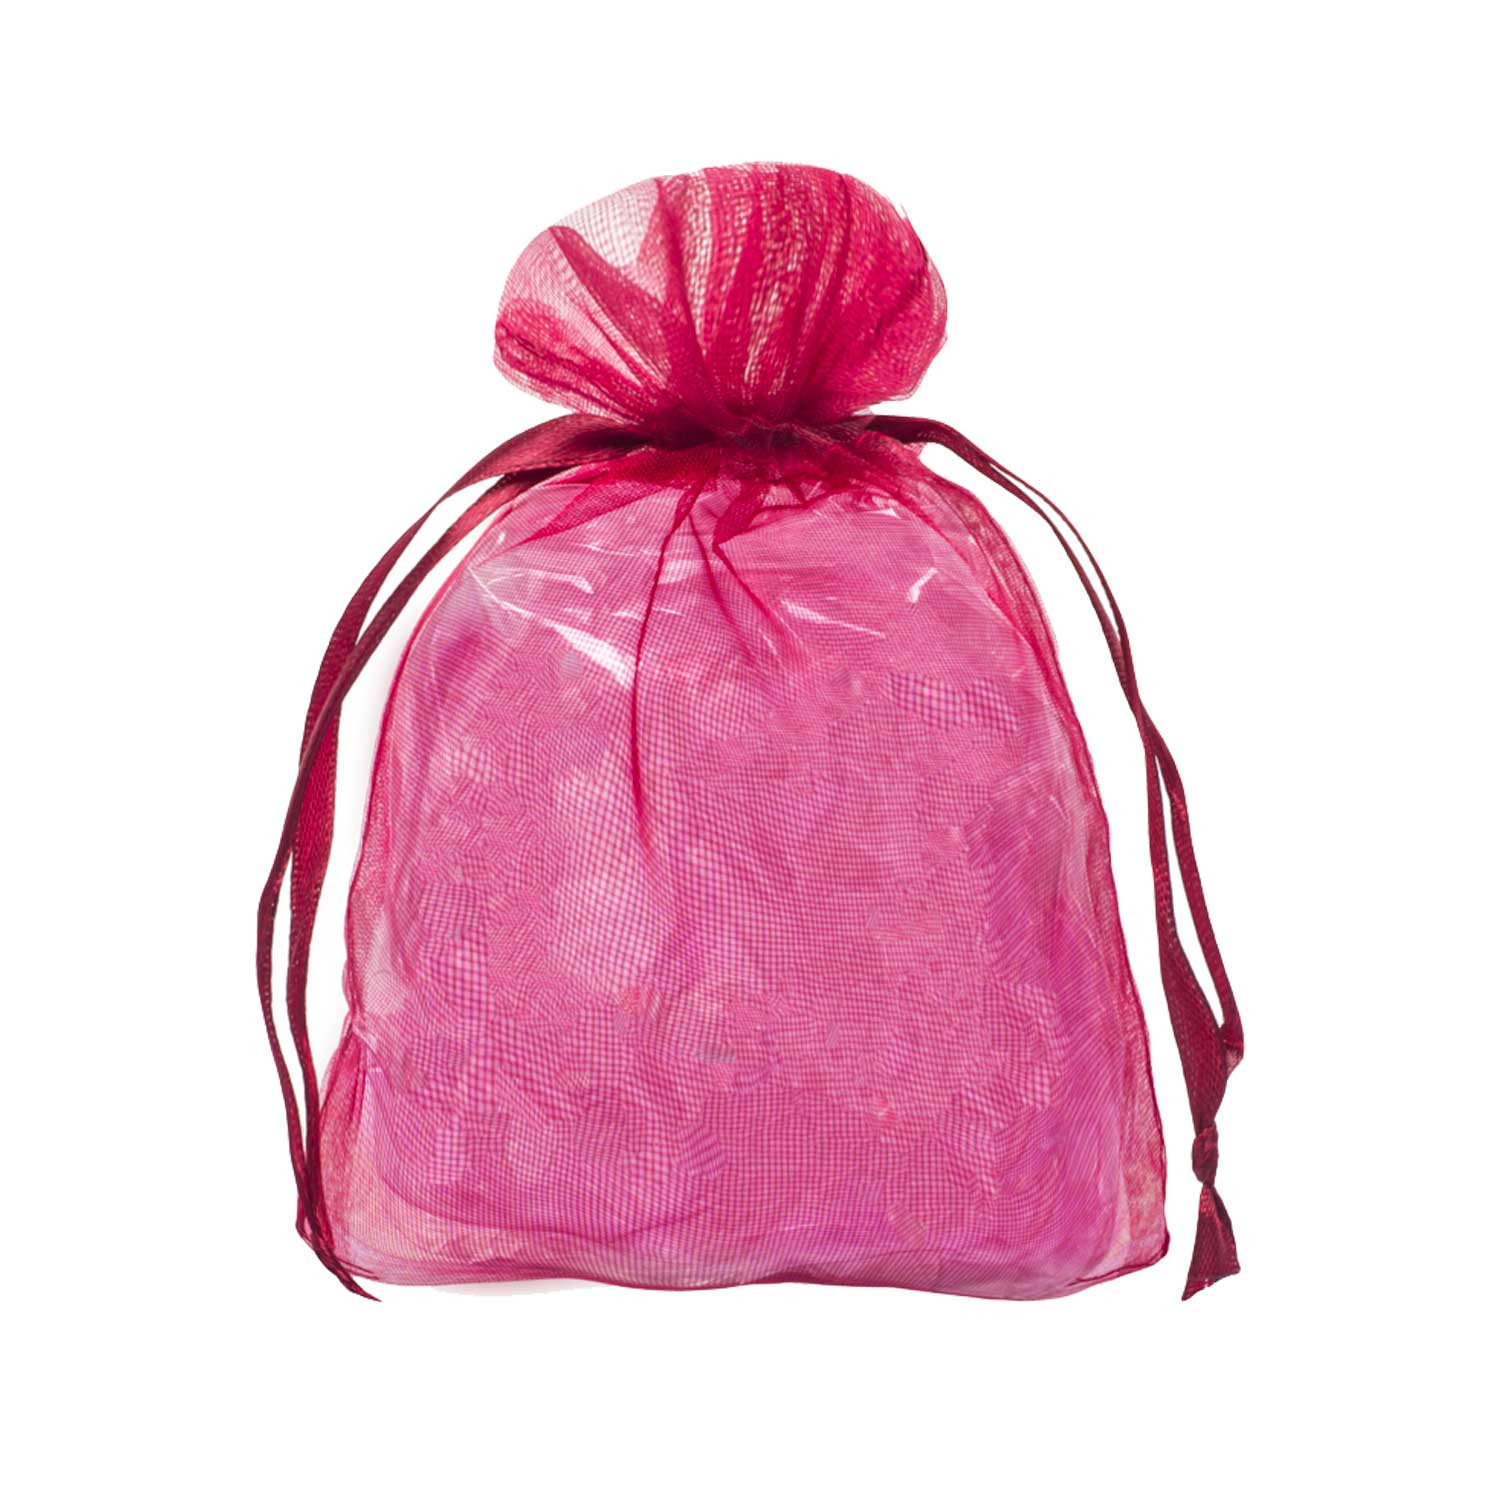 bordeaux 20 sacchetti di organza sacchetto organza ideali per confezione regalo decorazione elemento decorativo misura: 30x15 cm 